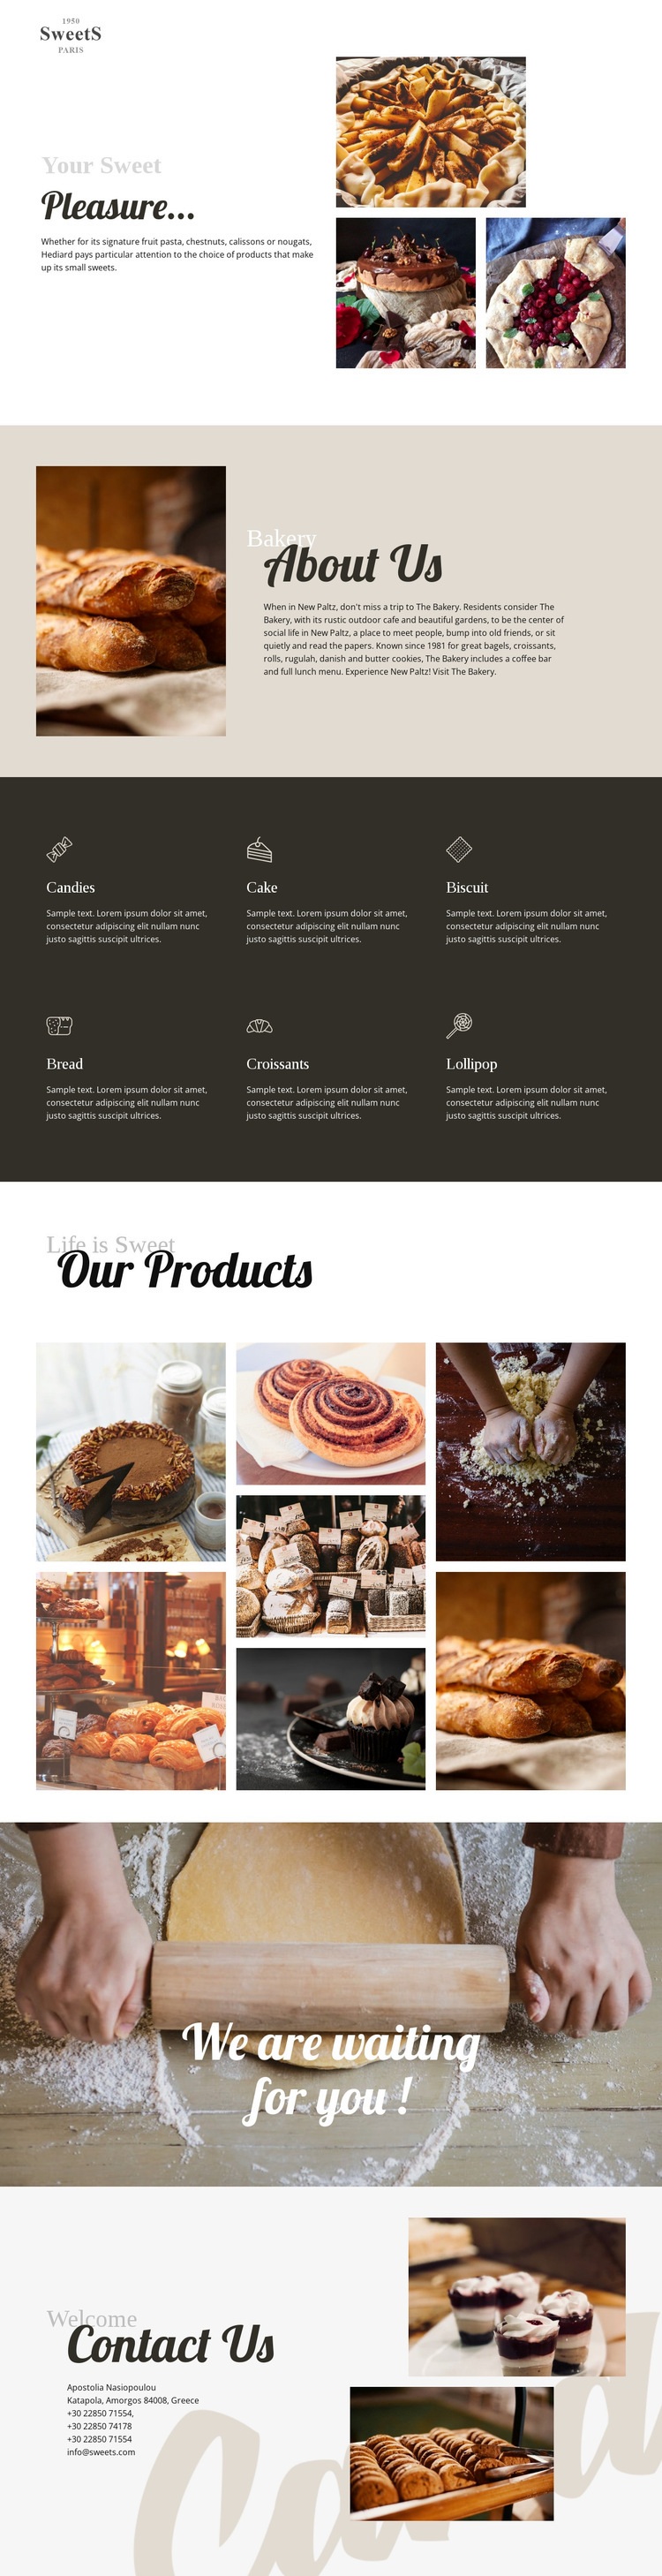 Sütemények és ételek sütése Html Weboldal készítő